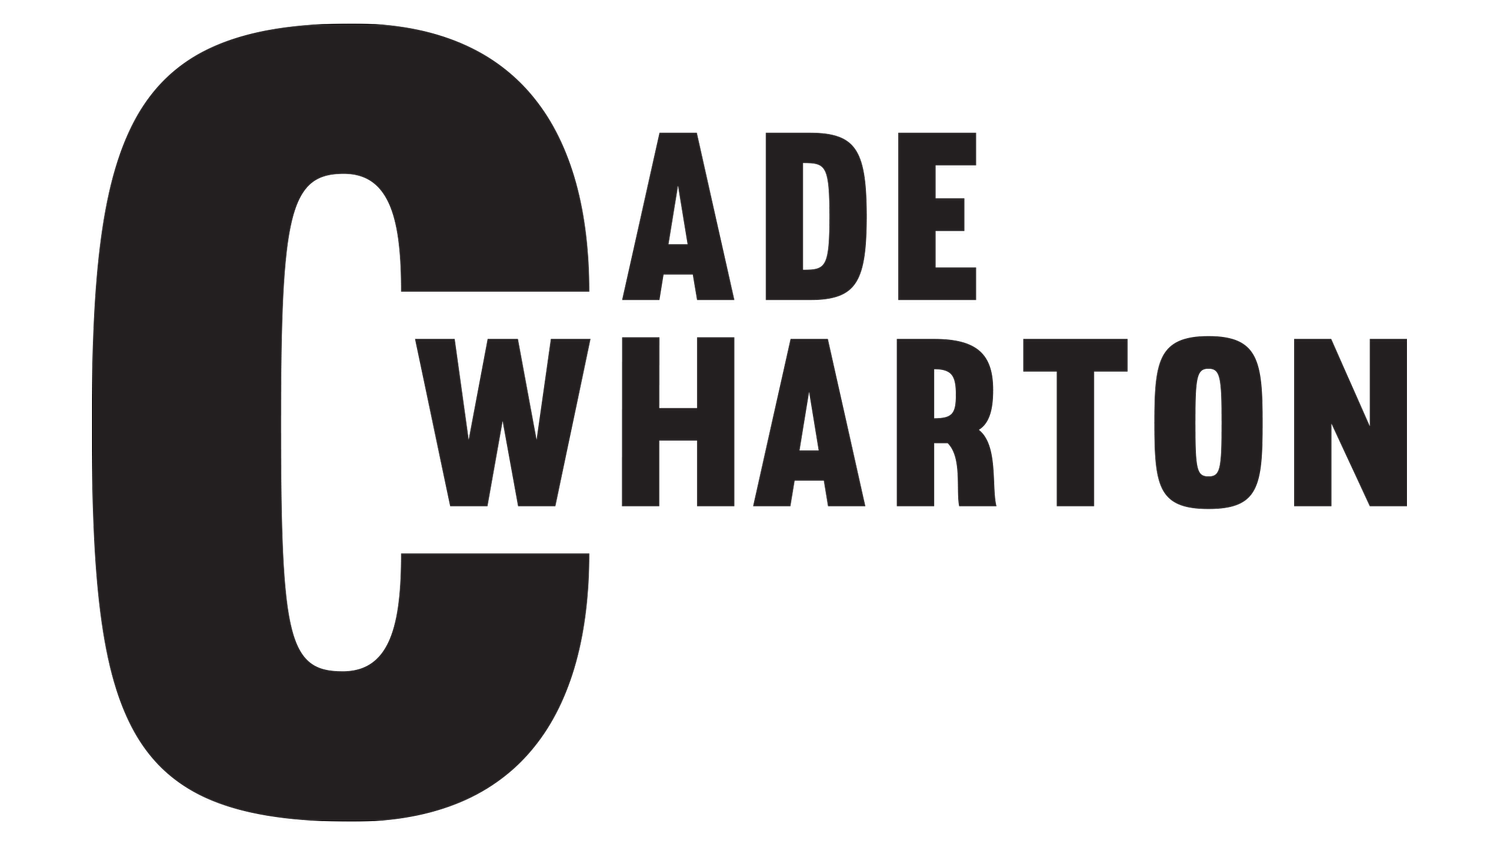 Cade Wharton